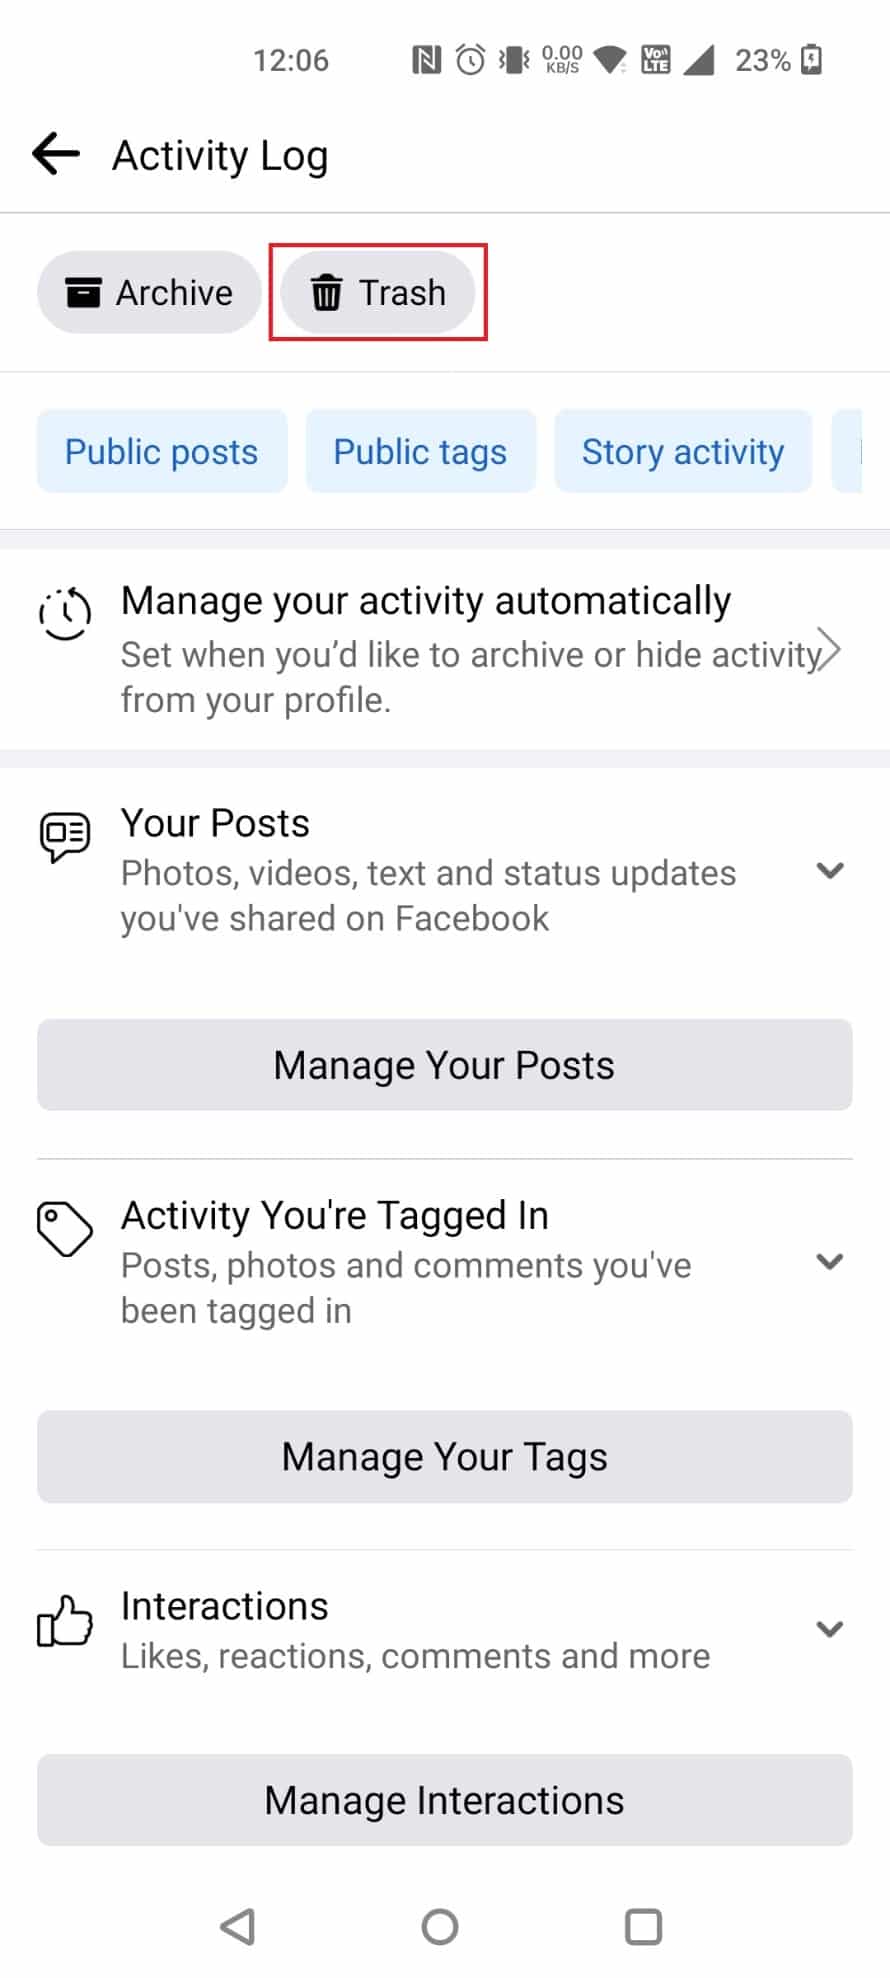 Нажмите «Корзина», чтобы найти все удаленные сообщения за последние 30 дней | восстановить удаленный журнал активности на Facebook